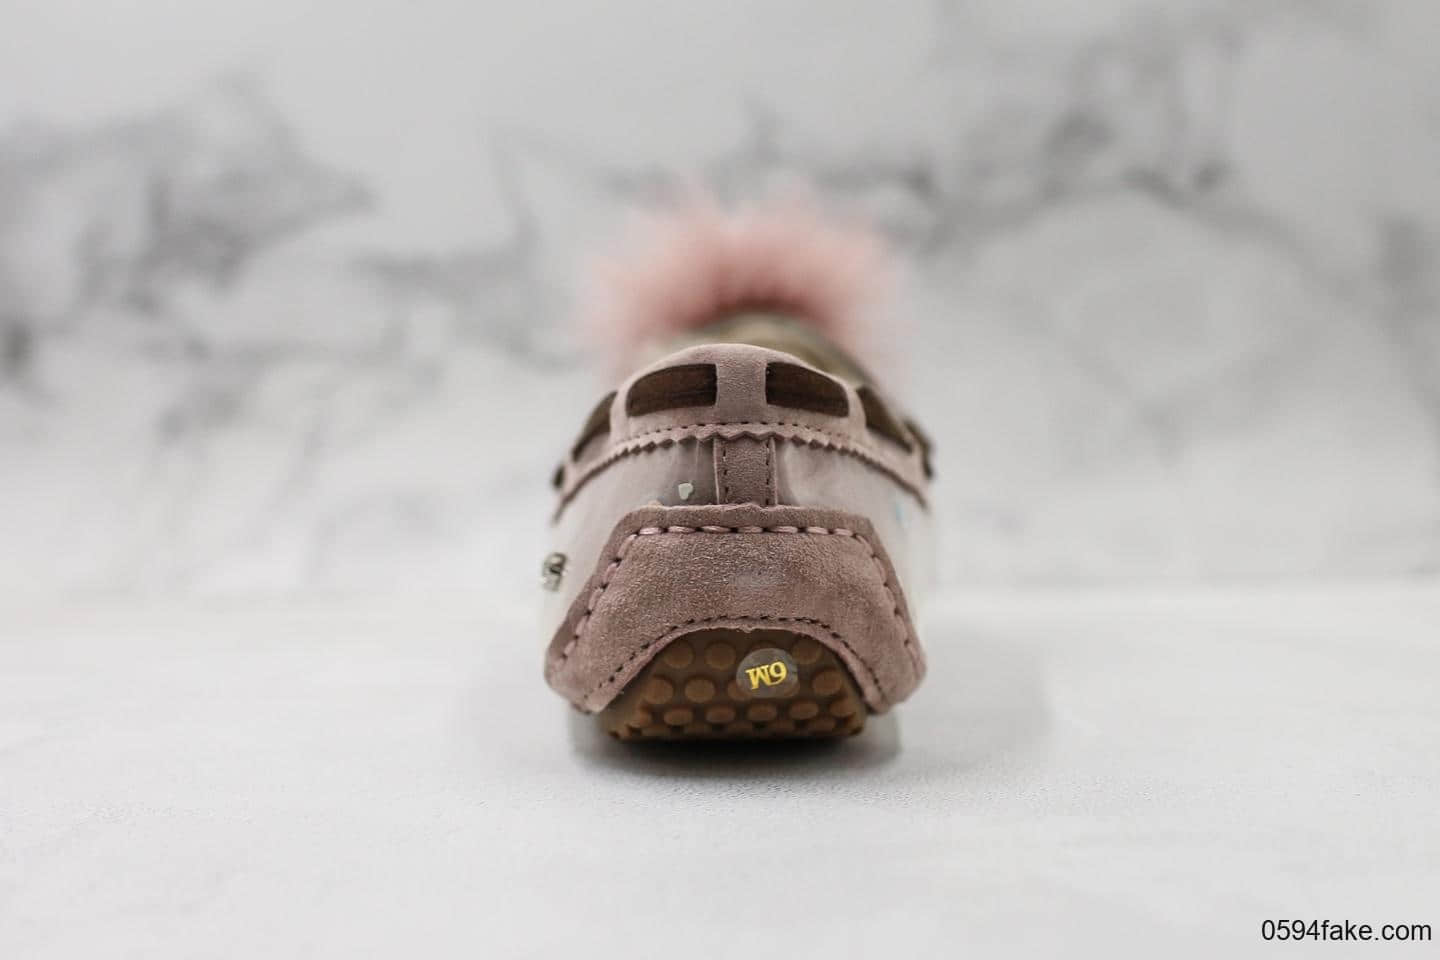 UGG 豆豆鞋托斯卡纳毛球款纯原版本原盒原标美国首发蝴蝶结系列